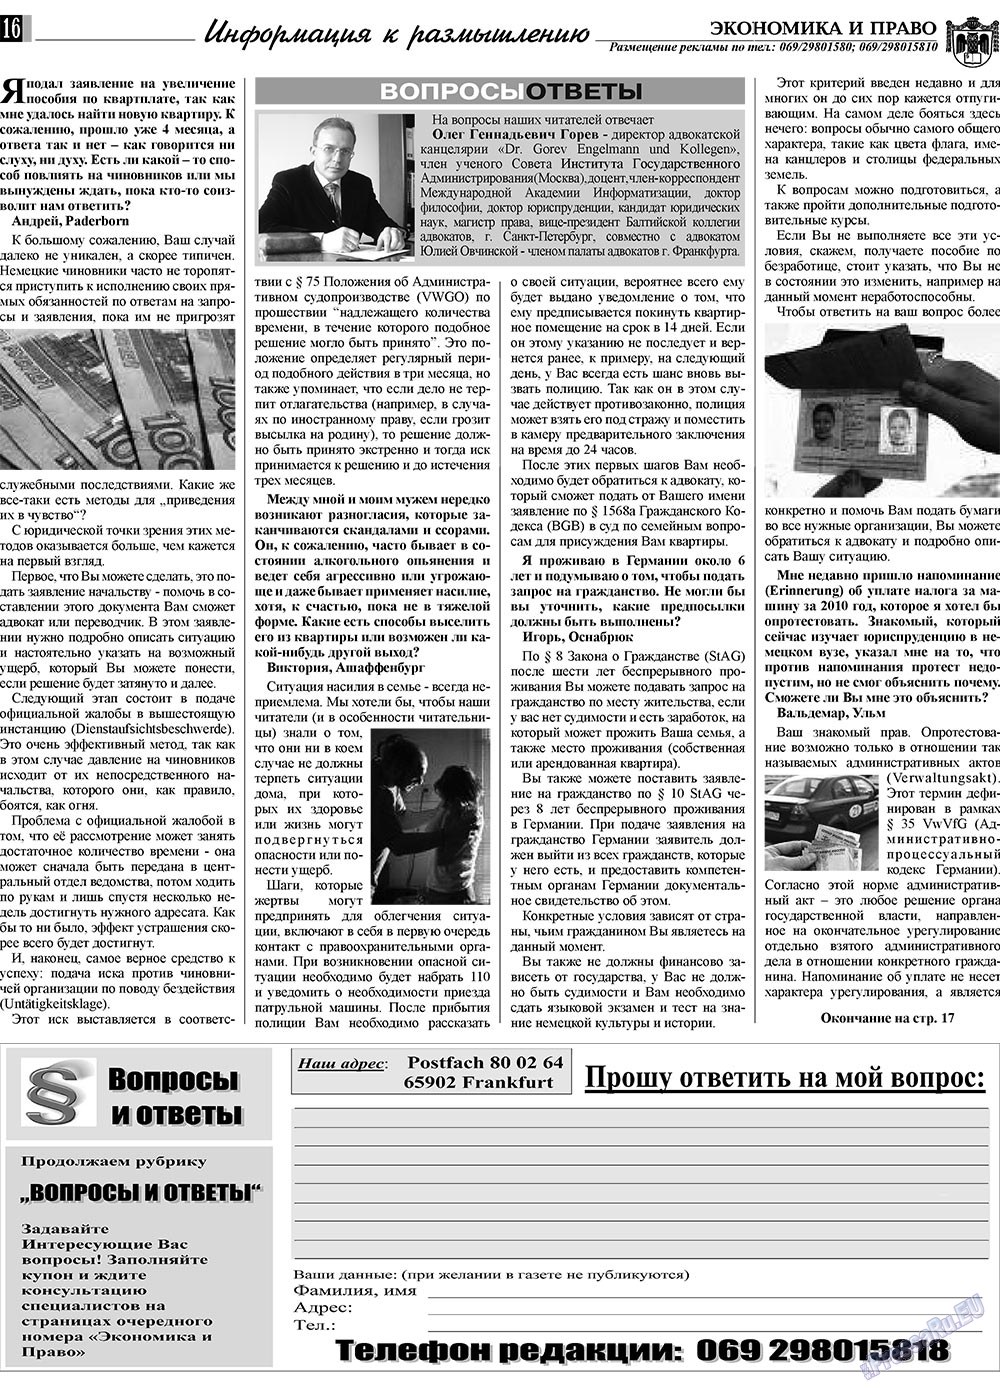 Экономика и право, газета. 2010 №2 стр.16